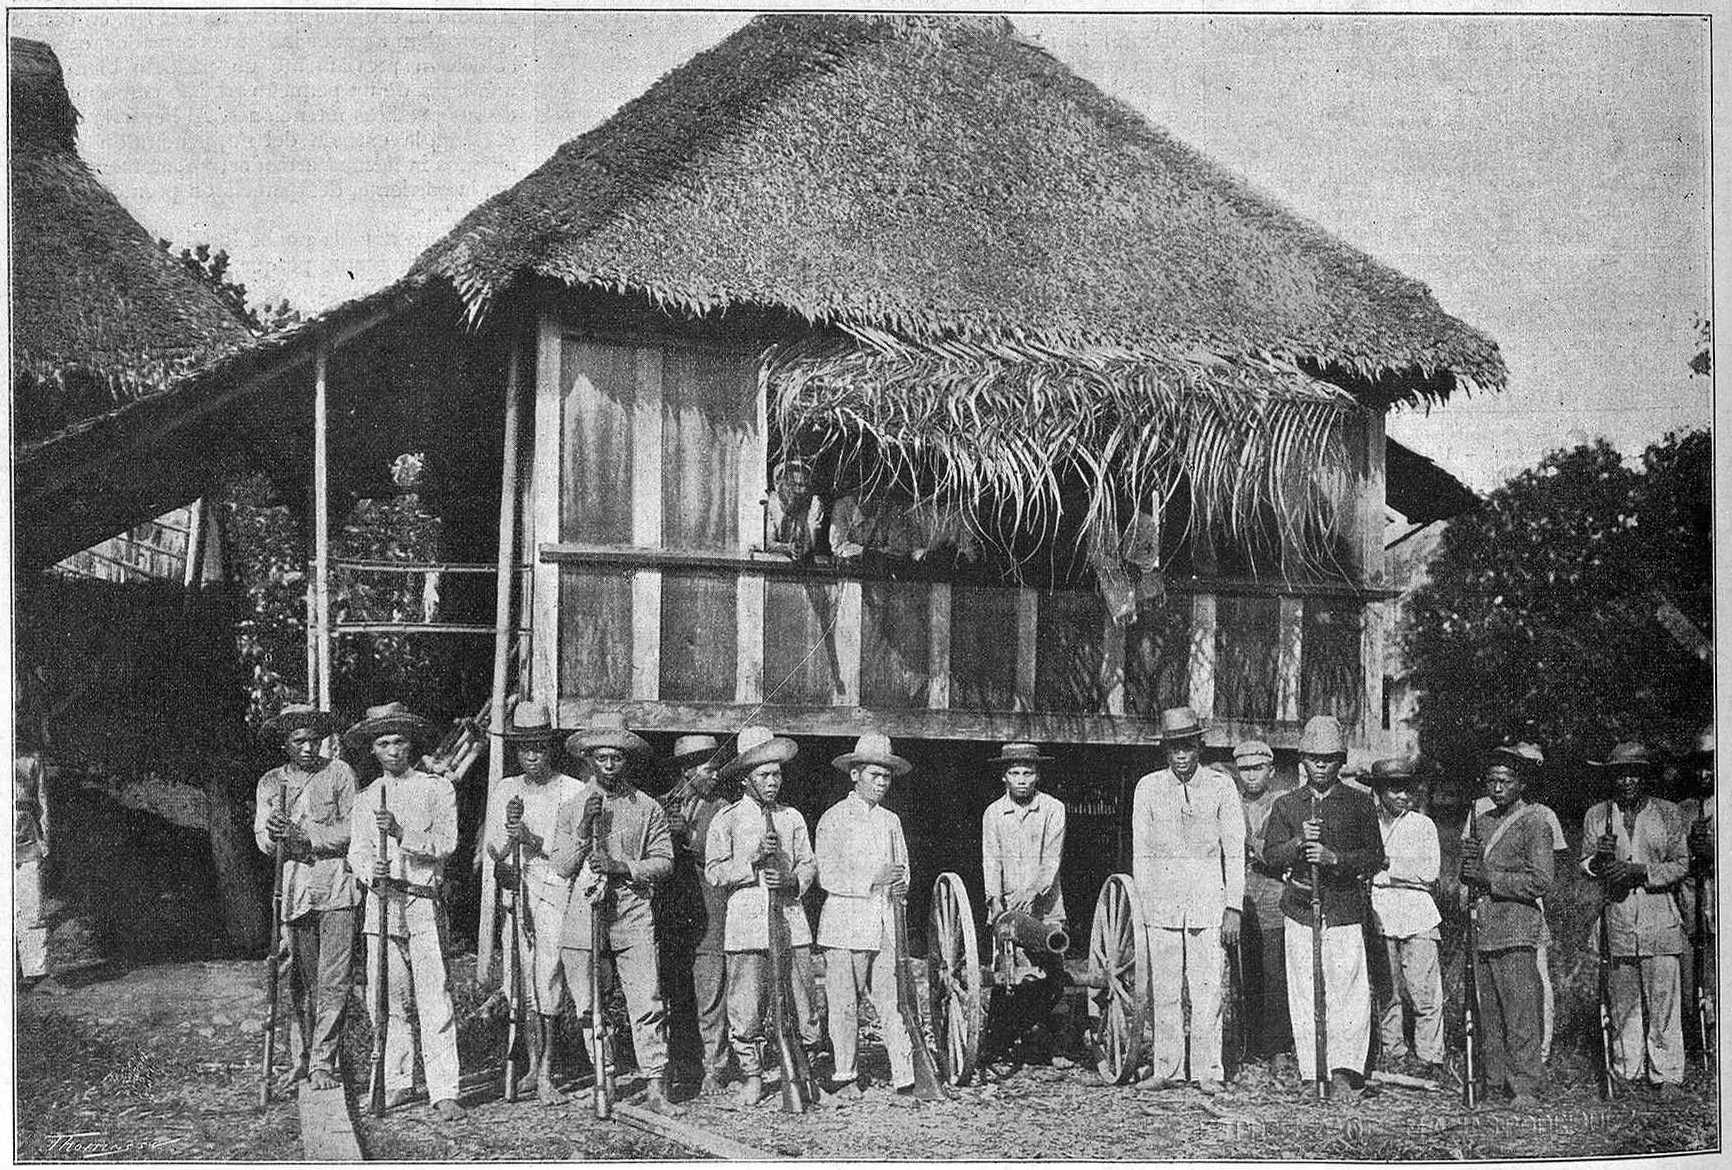 The troops of Lieutenant-Colonel Tecsón in Baler (May of 1899, La Ilustración Artística, M. Arias y Rodríguez)